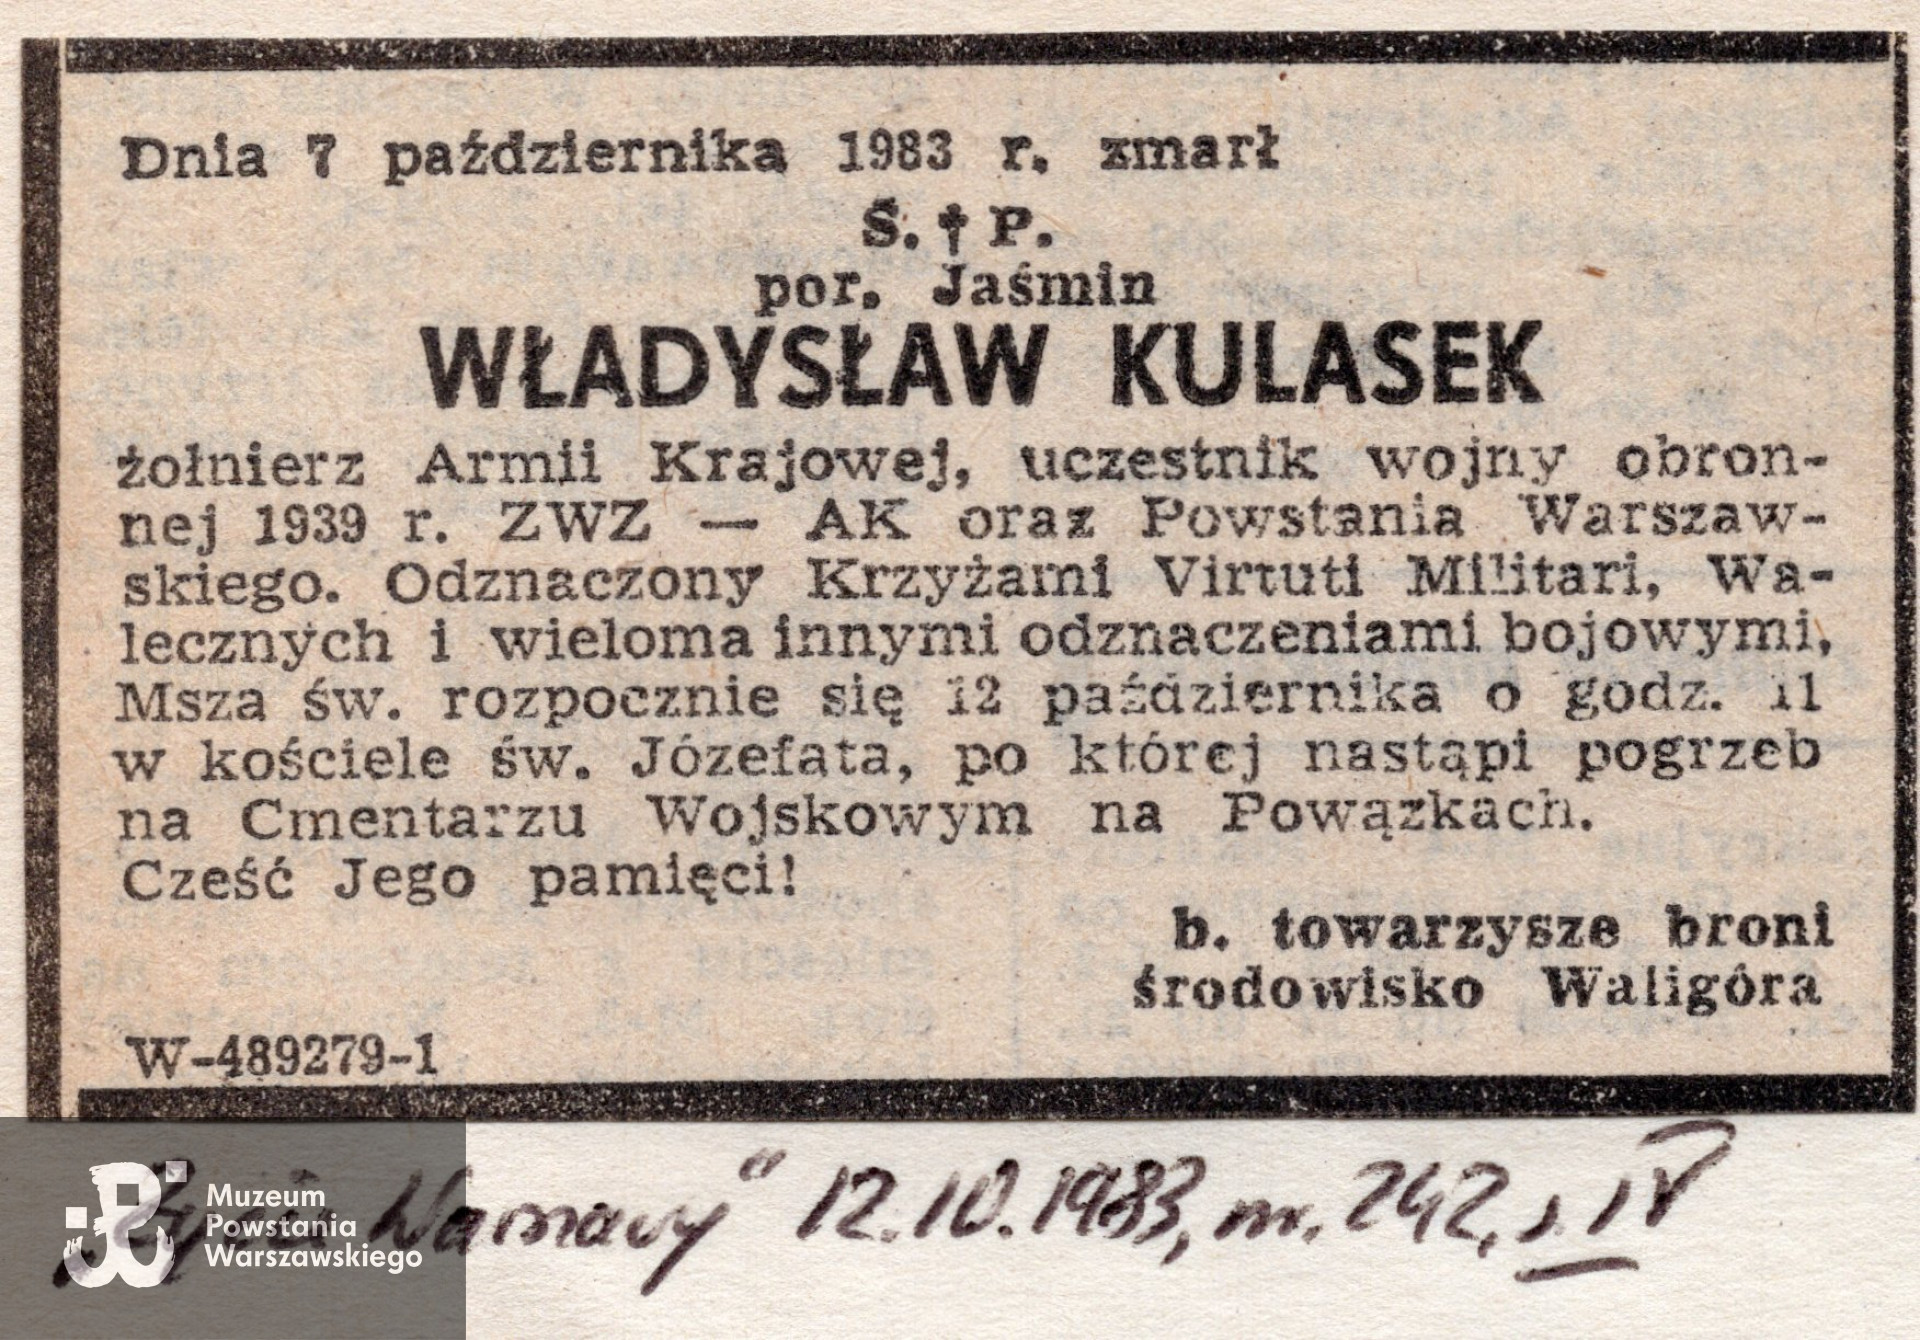 Nekrolog prasowy, Życie Warszawy, nr 242, 12.10.1983